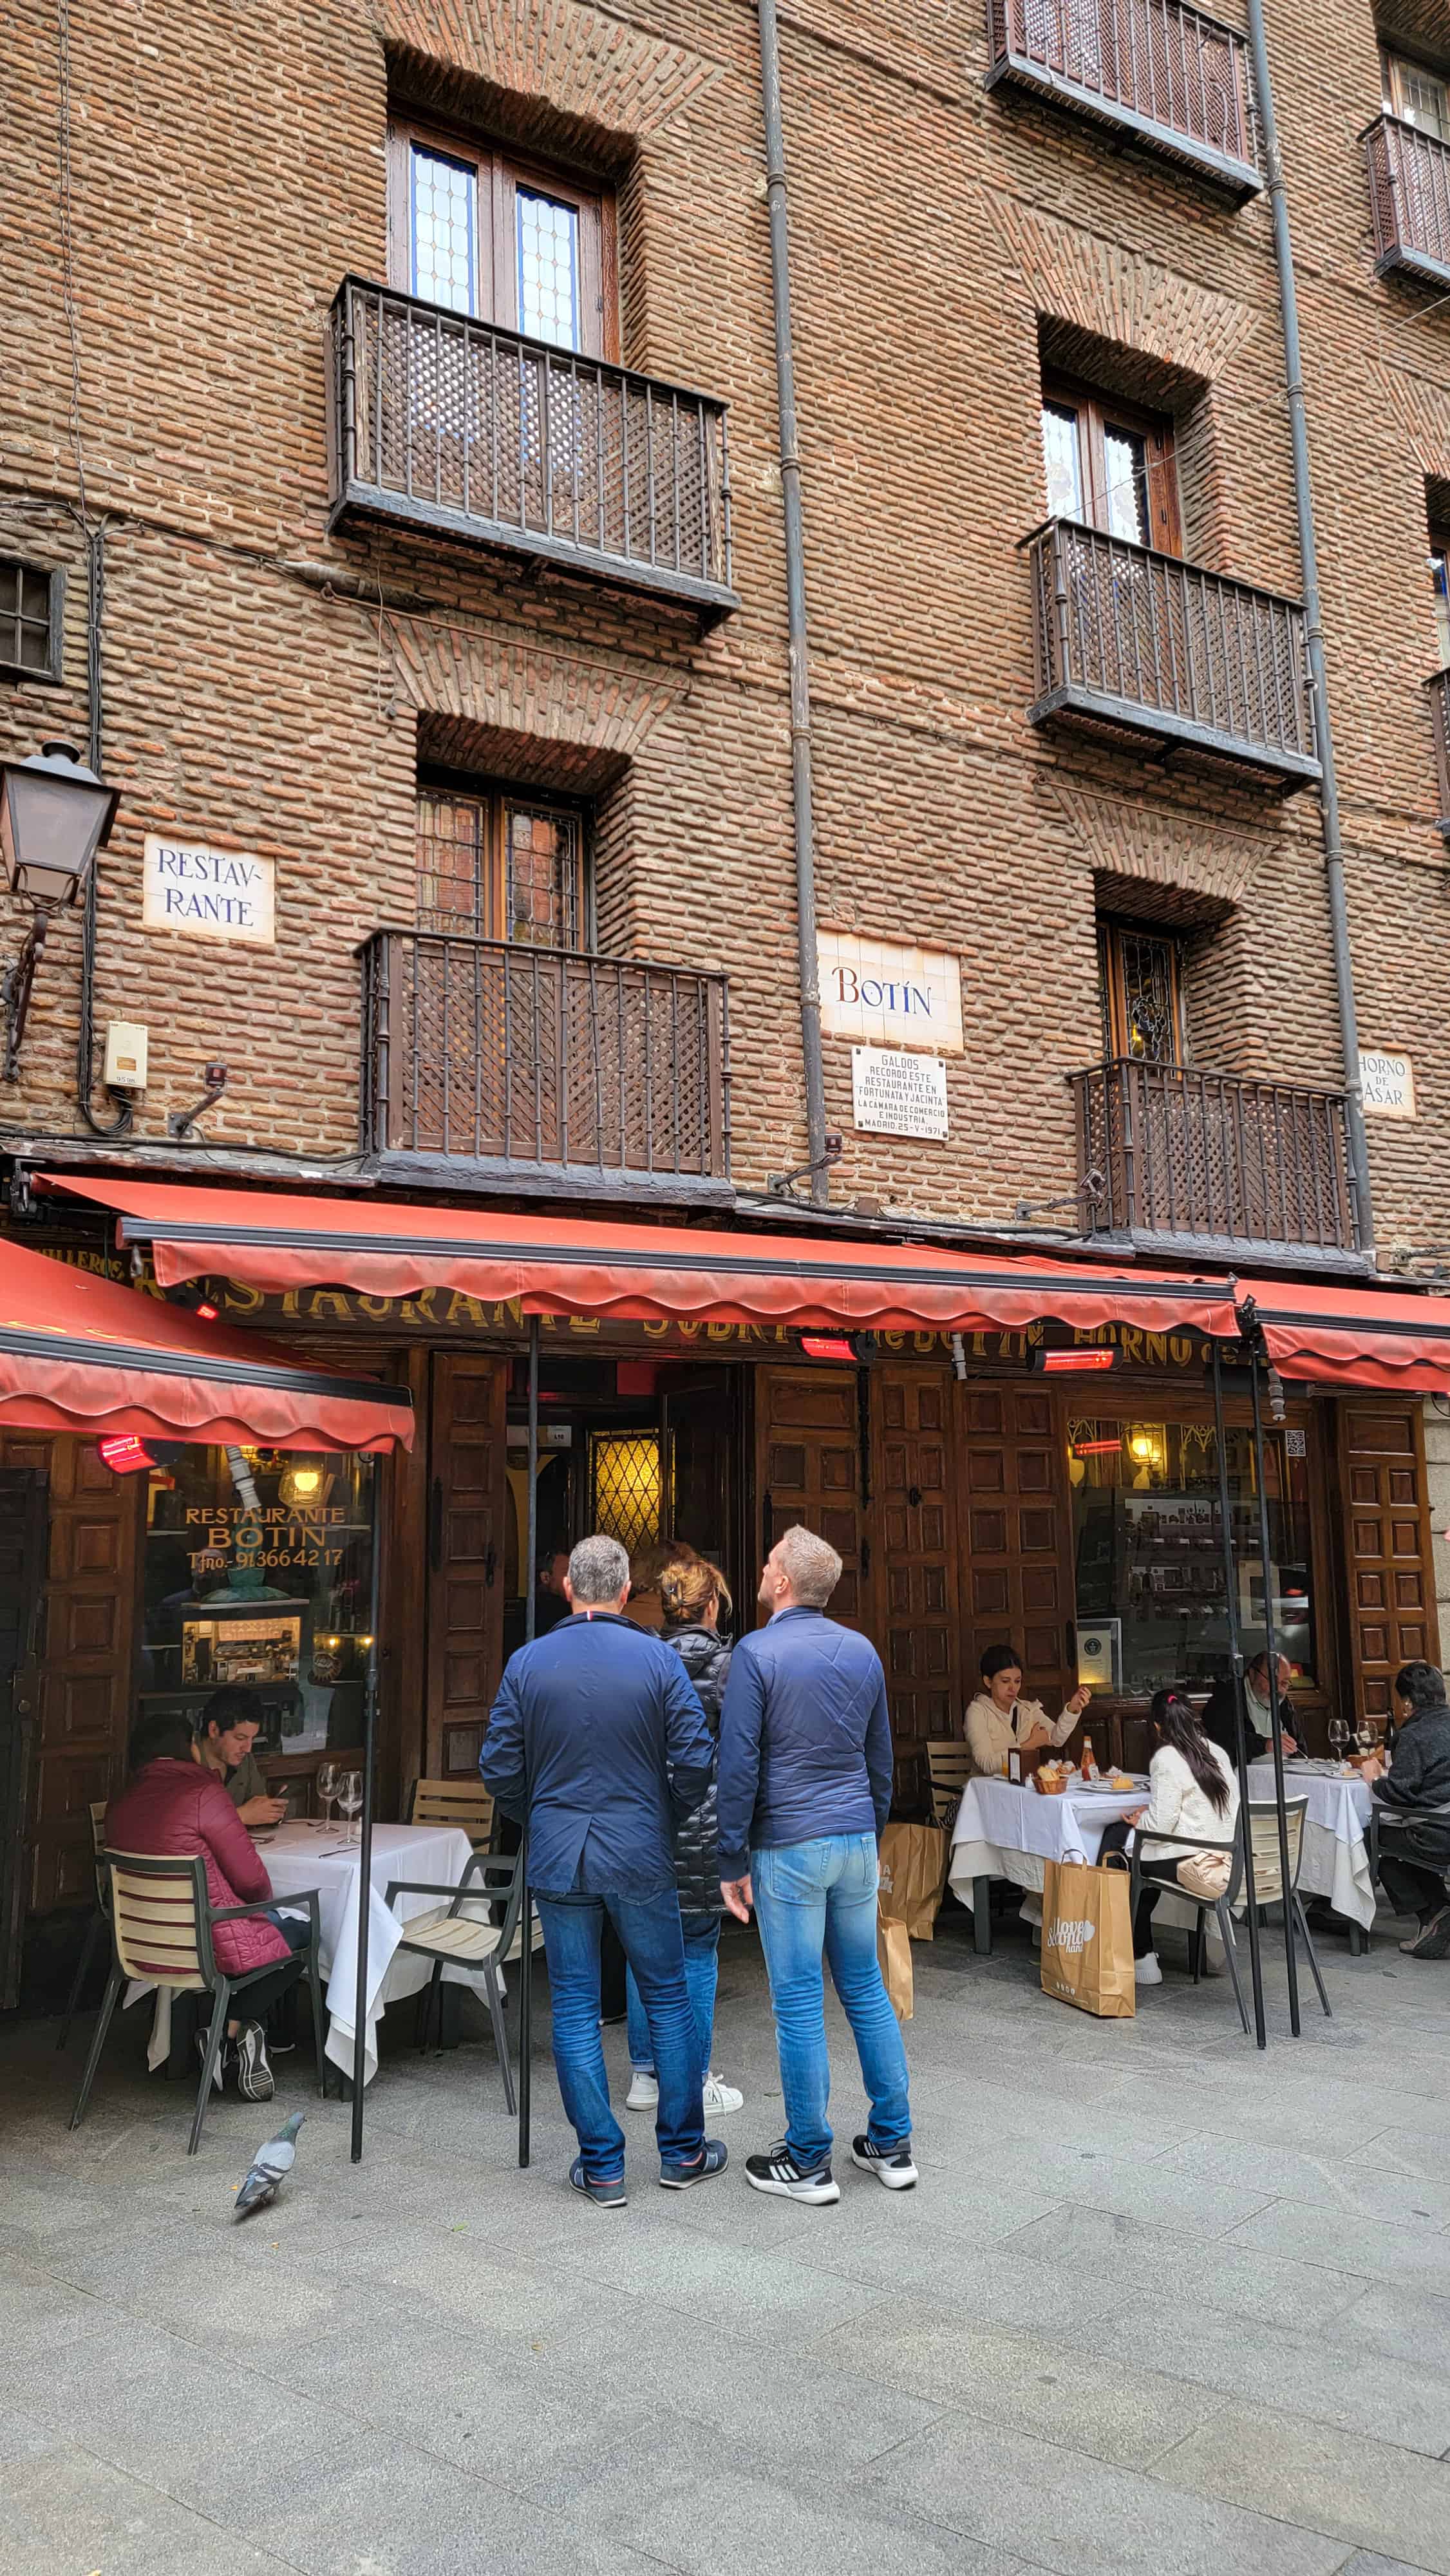 botin, the oldest restaurant in the world